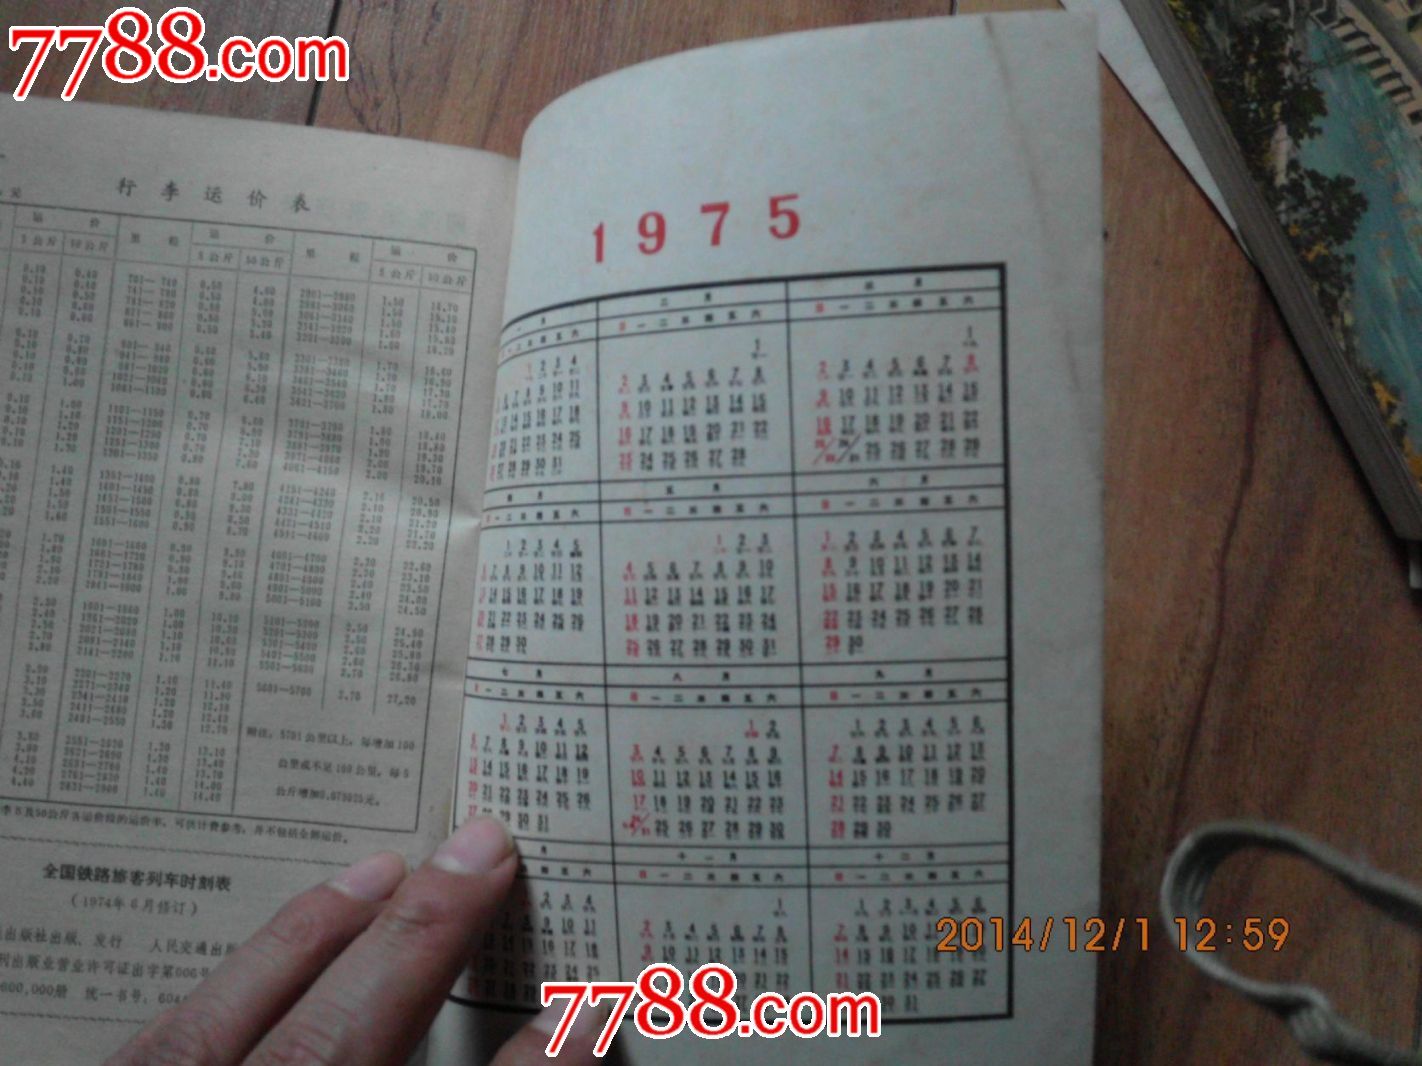 1974年列车时刻表,手册\/工具书,时刻表,文革期